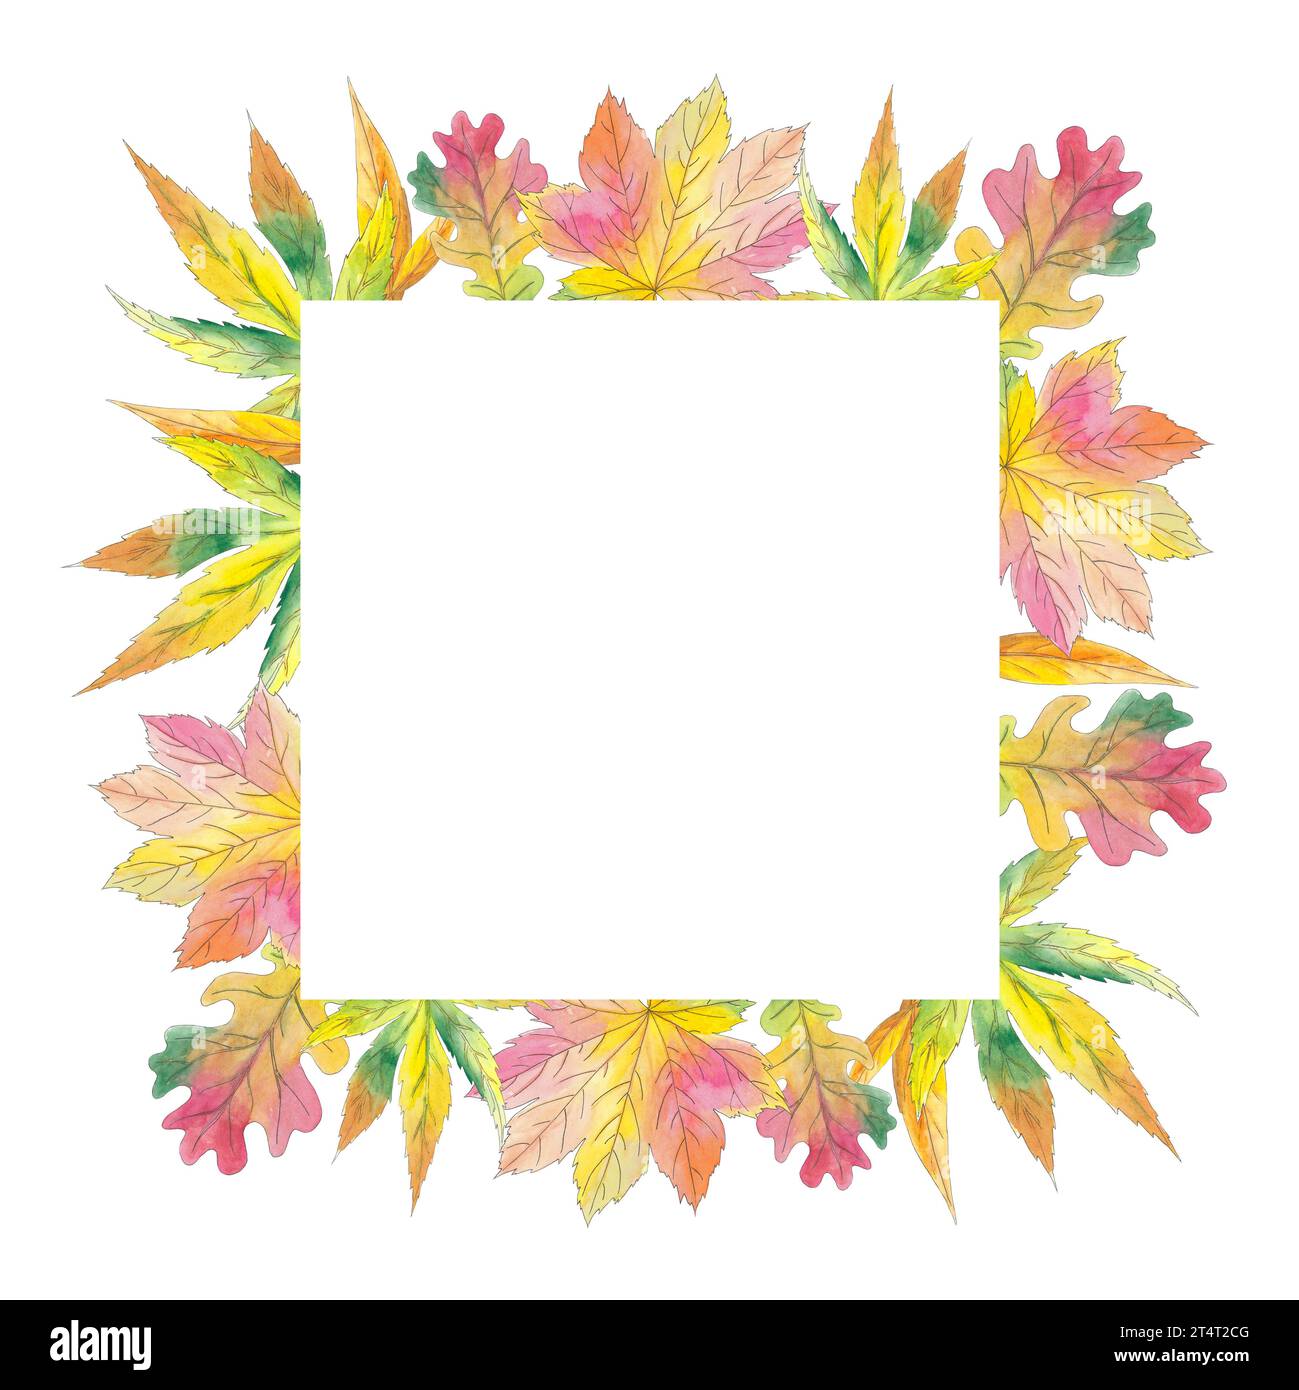 Cadre aquarelle avec érable, saule, feuilles de chêne illustration d'automne sur fond blanc. Belle carte postale botanique colorée. Art pour carte de conception Banque D'Images